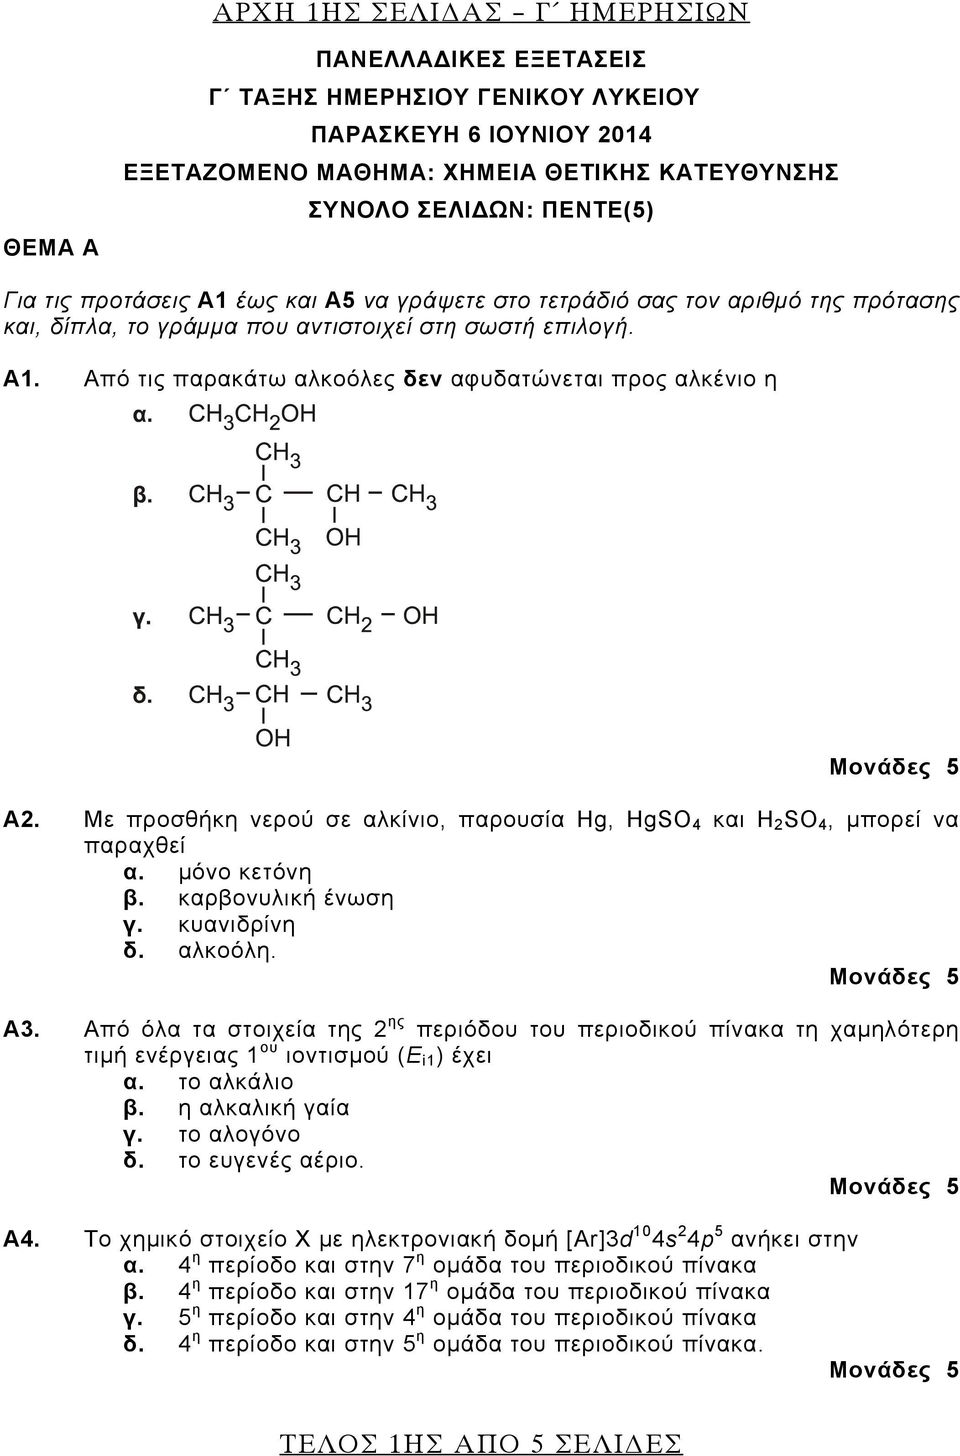 Με προσθήκη νερού σε αλκίνιο, παρουσία Hg, HgSO 4 και H 2 SO 4, μπορεί να παραχθεί α. μόνο κετόνη β. καρβονυλική ένωση γ. κυανιδρίνη δ. αλκοόλη. Α3.